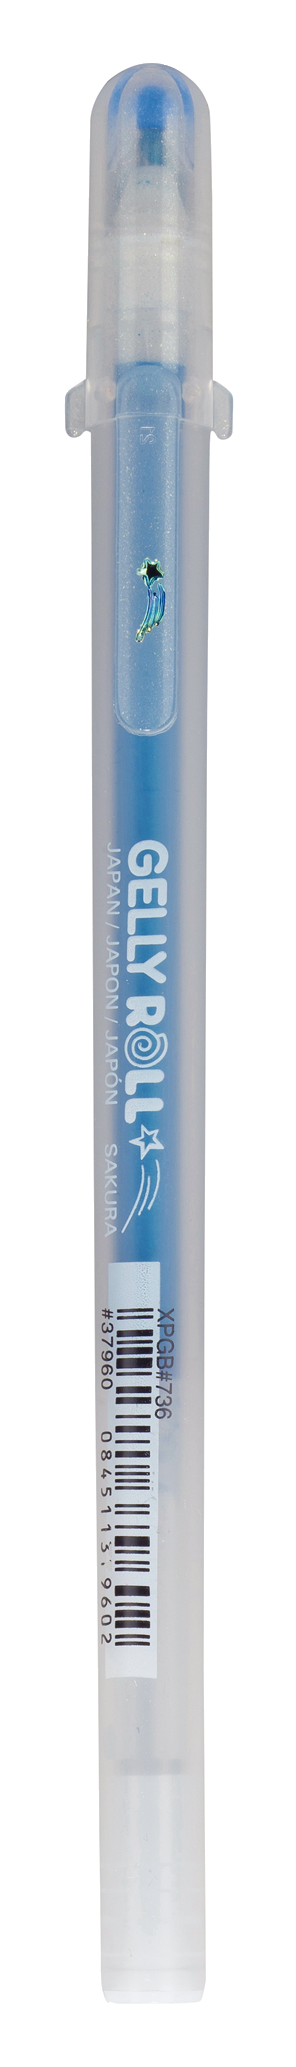 Blue Glitter Gel Pen - Sakura Gelly Roll Stardust